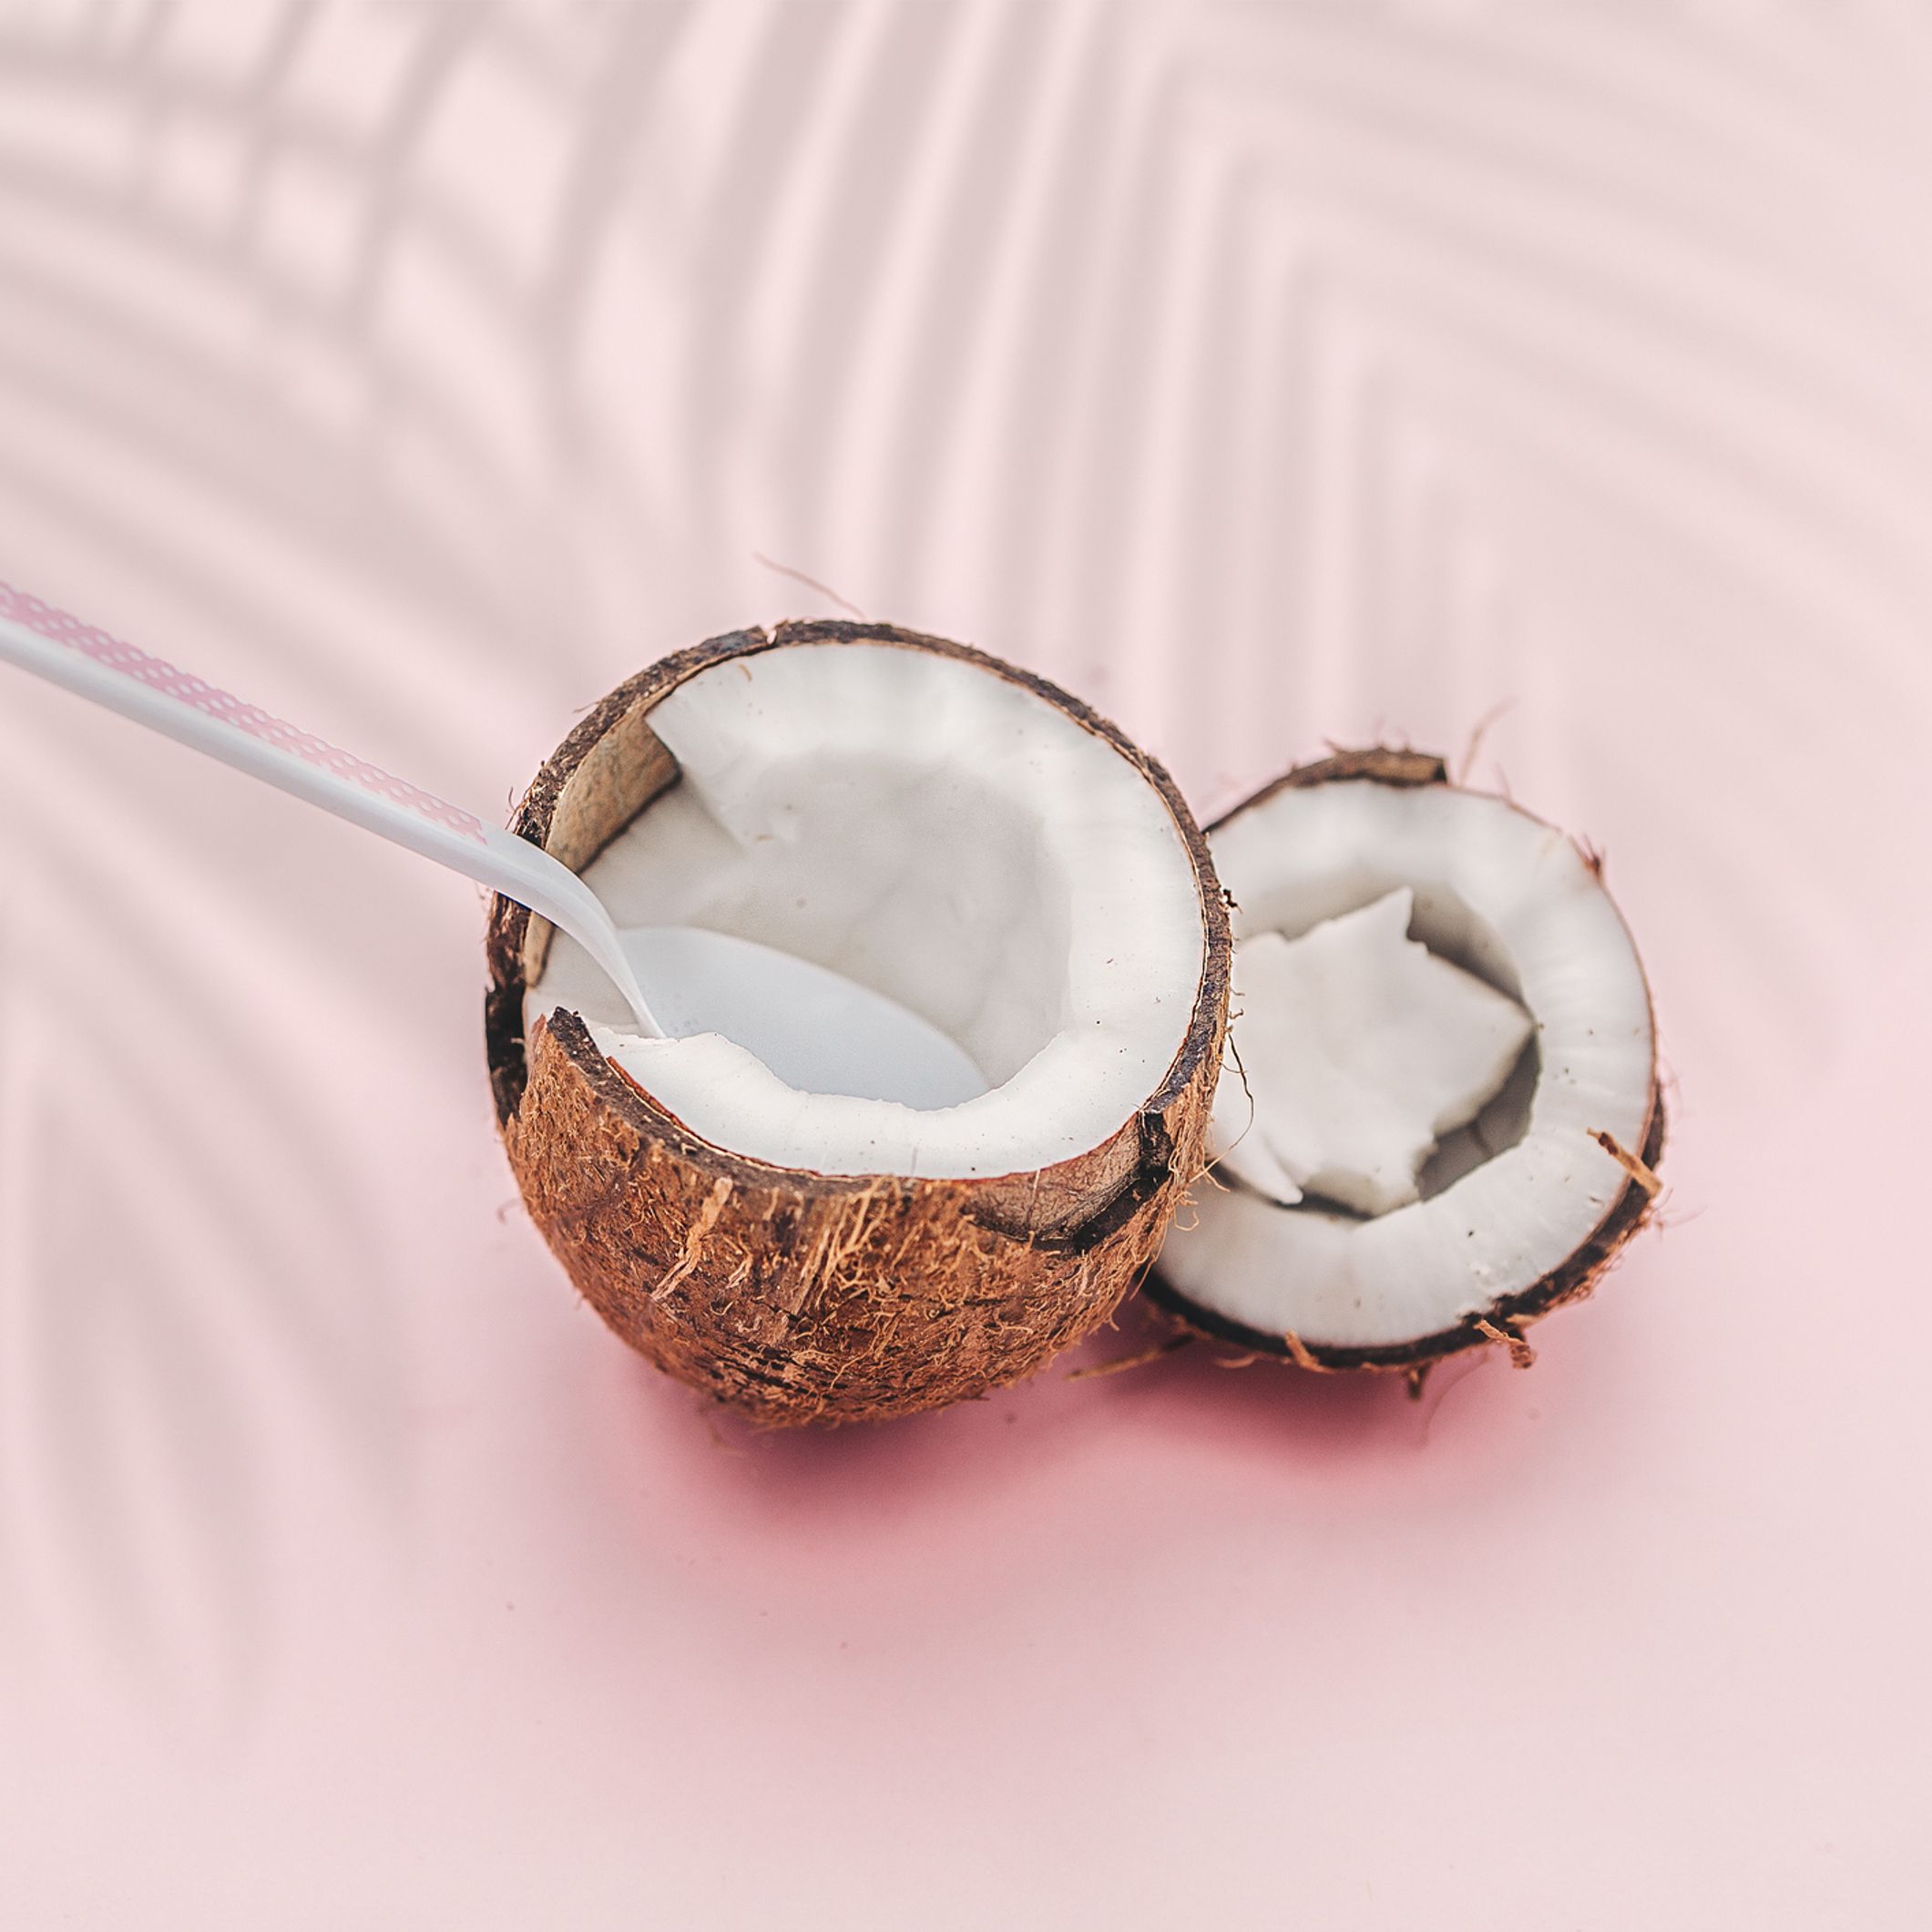 L'huile de coco, un démaquillant naturel très efficace